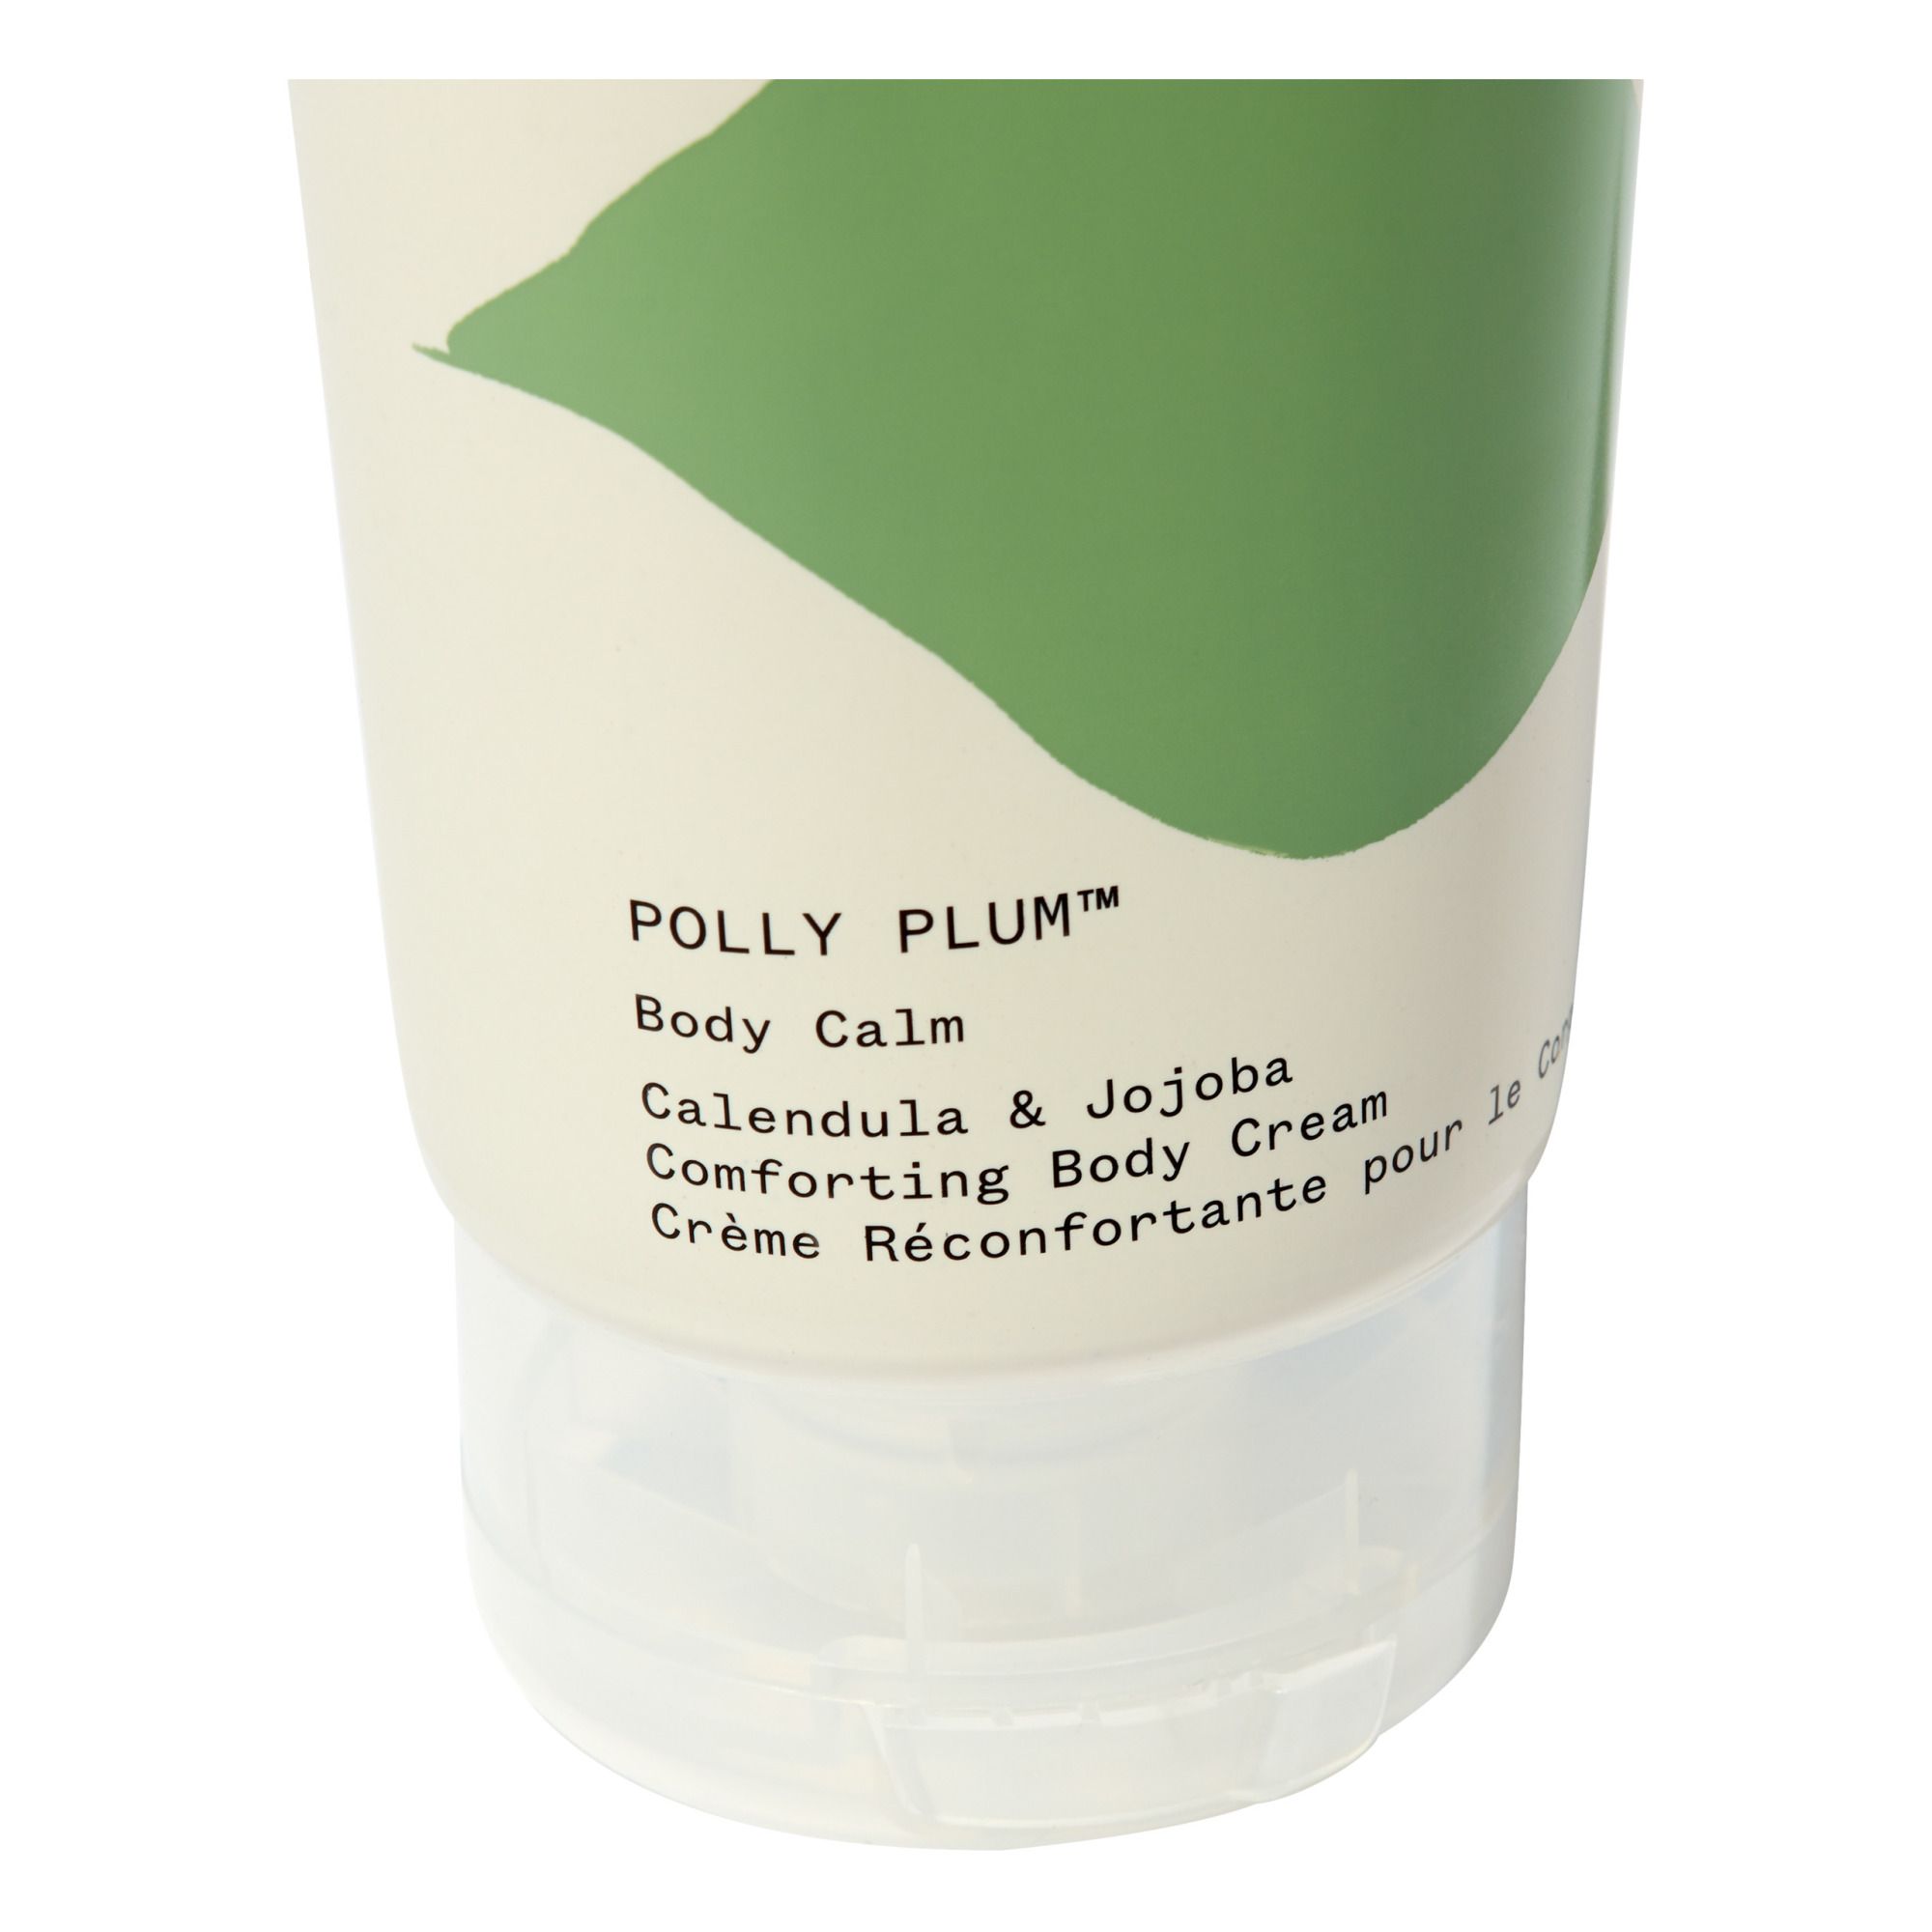 Crema reconfortante para el cuerpo Polly plum - 200 ml- Imagen del producto n°1